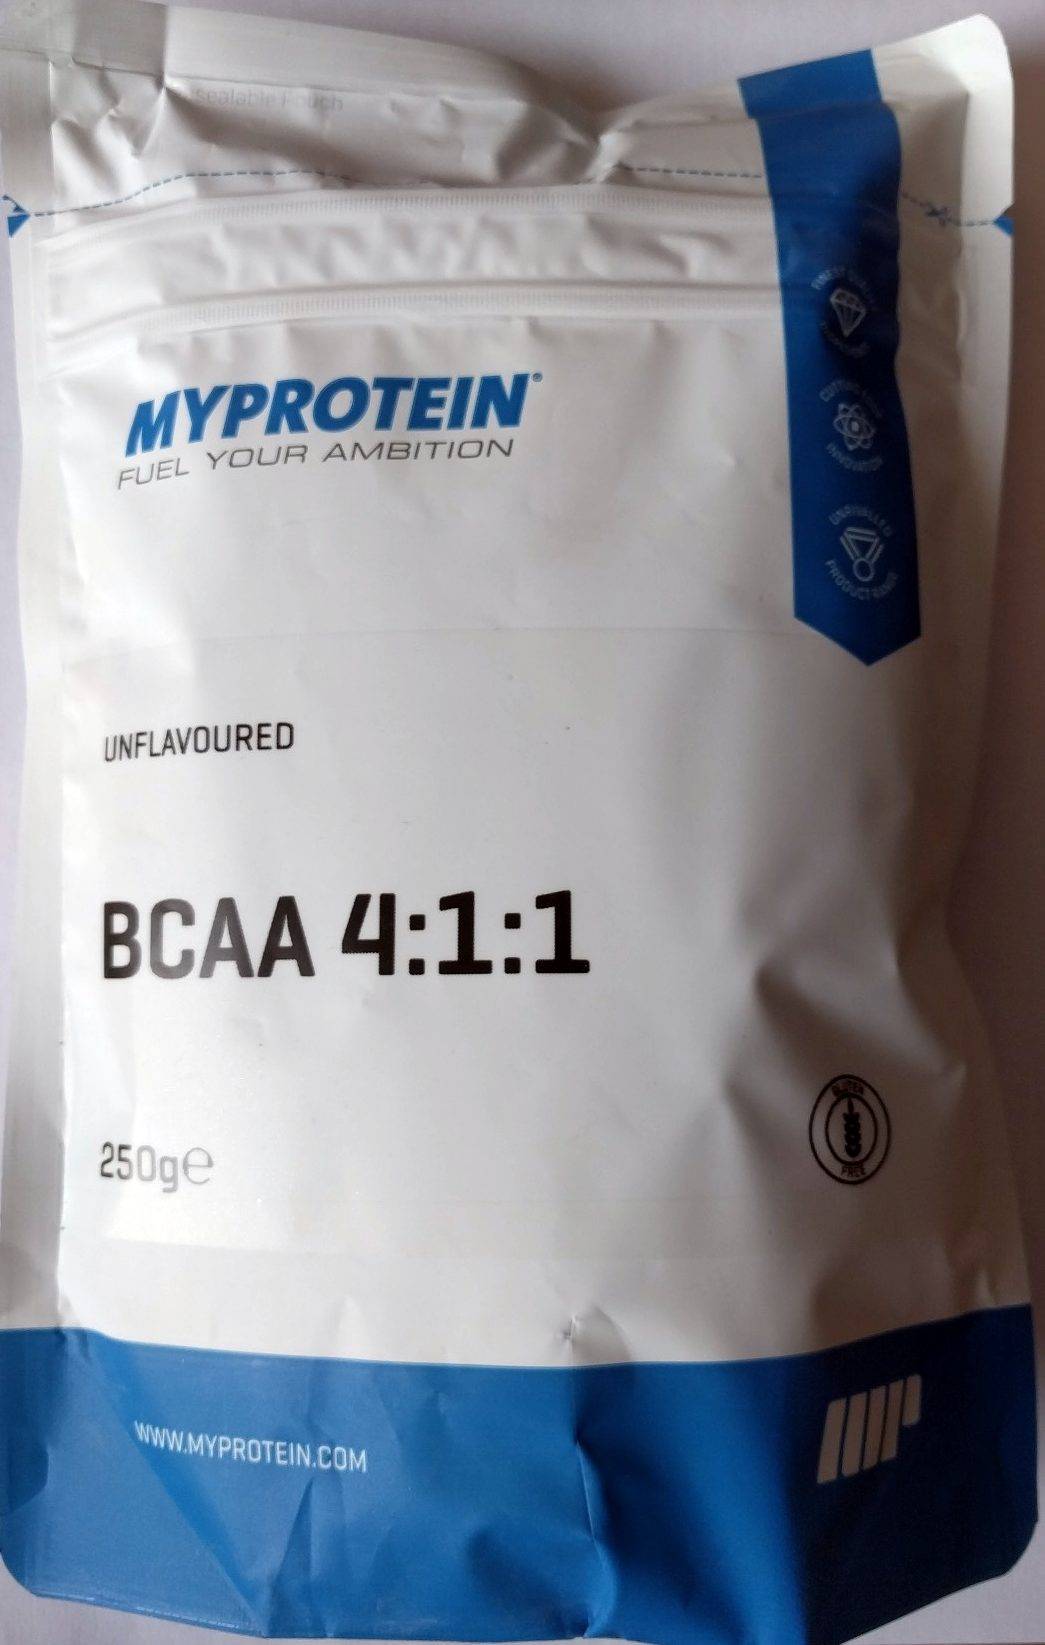 Bcaa от myprotein: как принимать, состав и отзывы